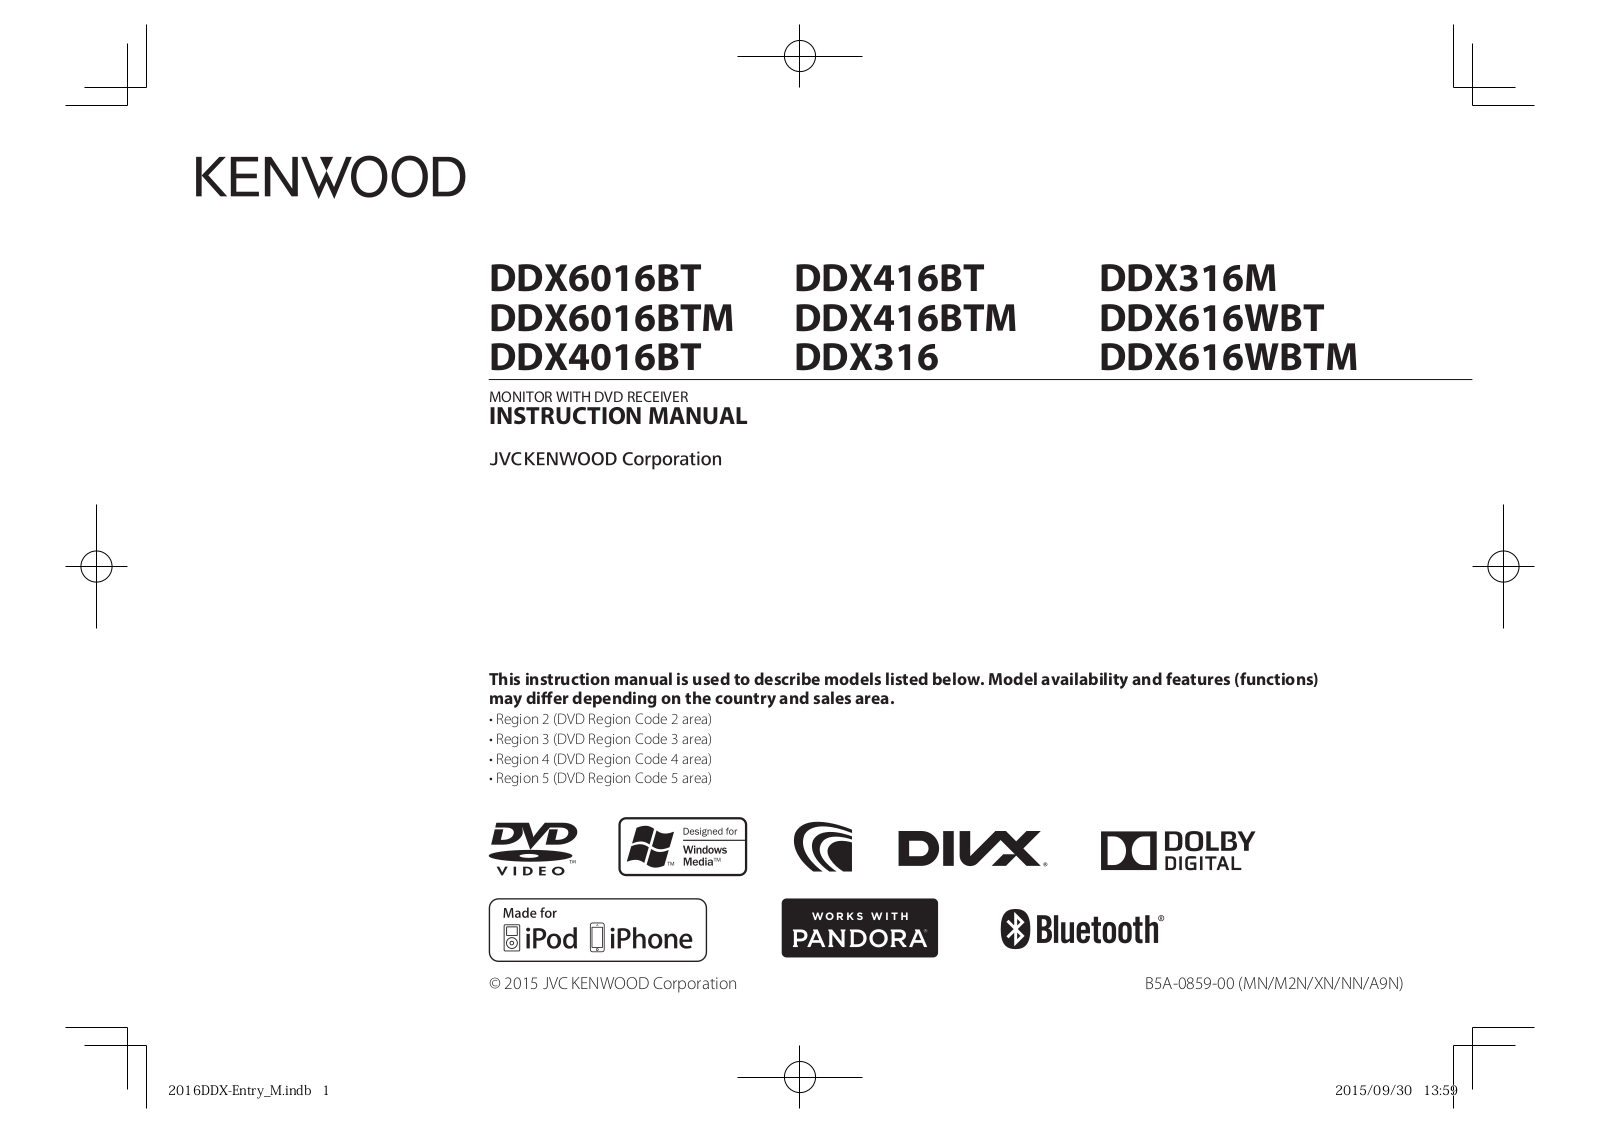 Kenwood DDX4016BT, DDX316M, DDX316, DDX416BT, DDX616WBTM Manual